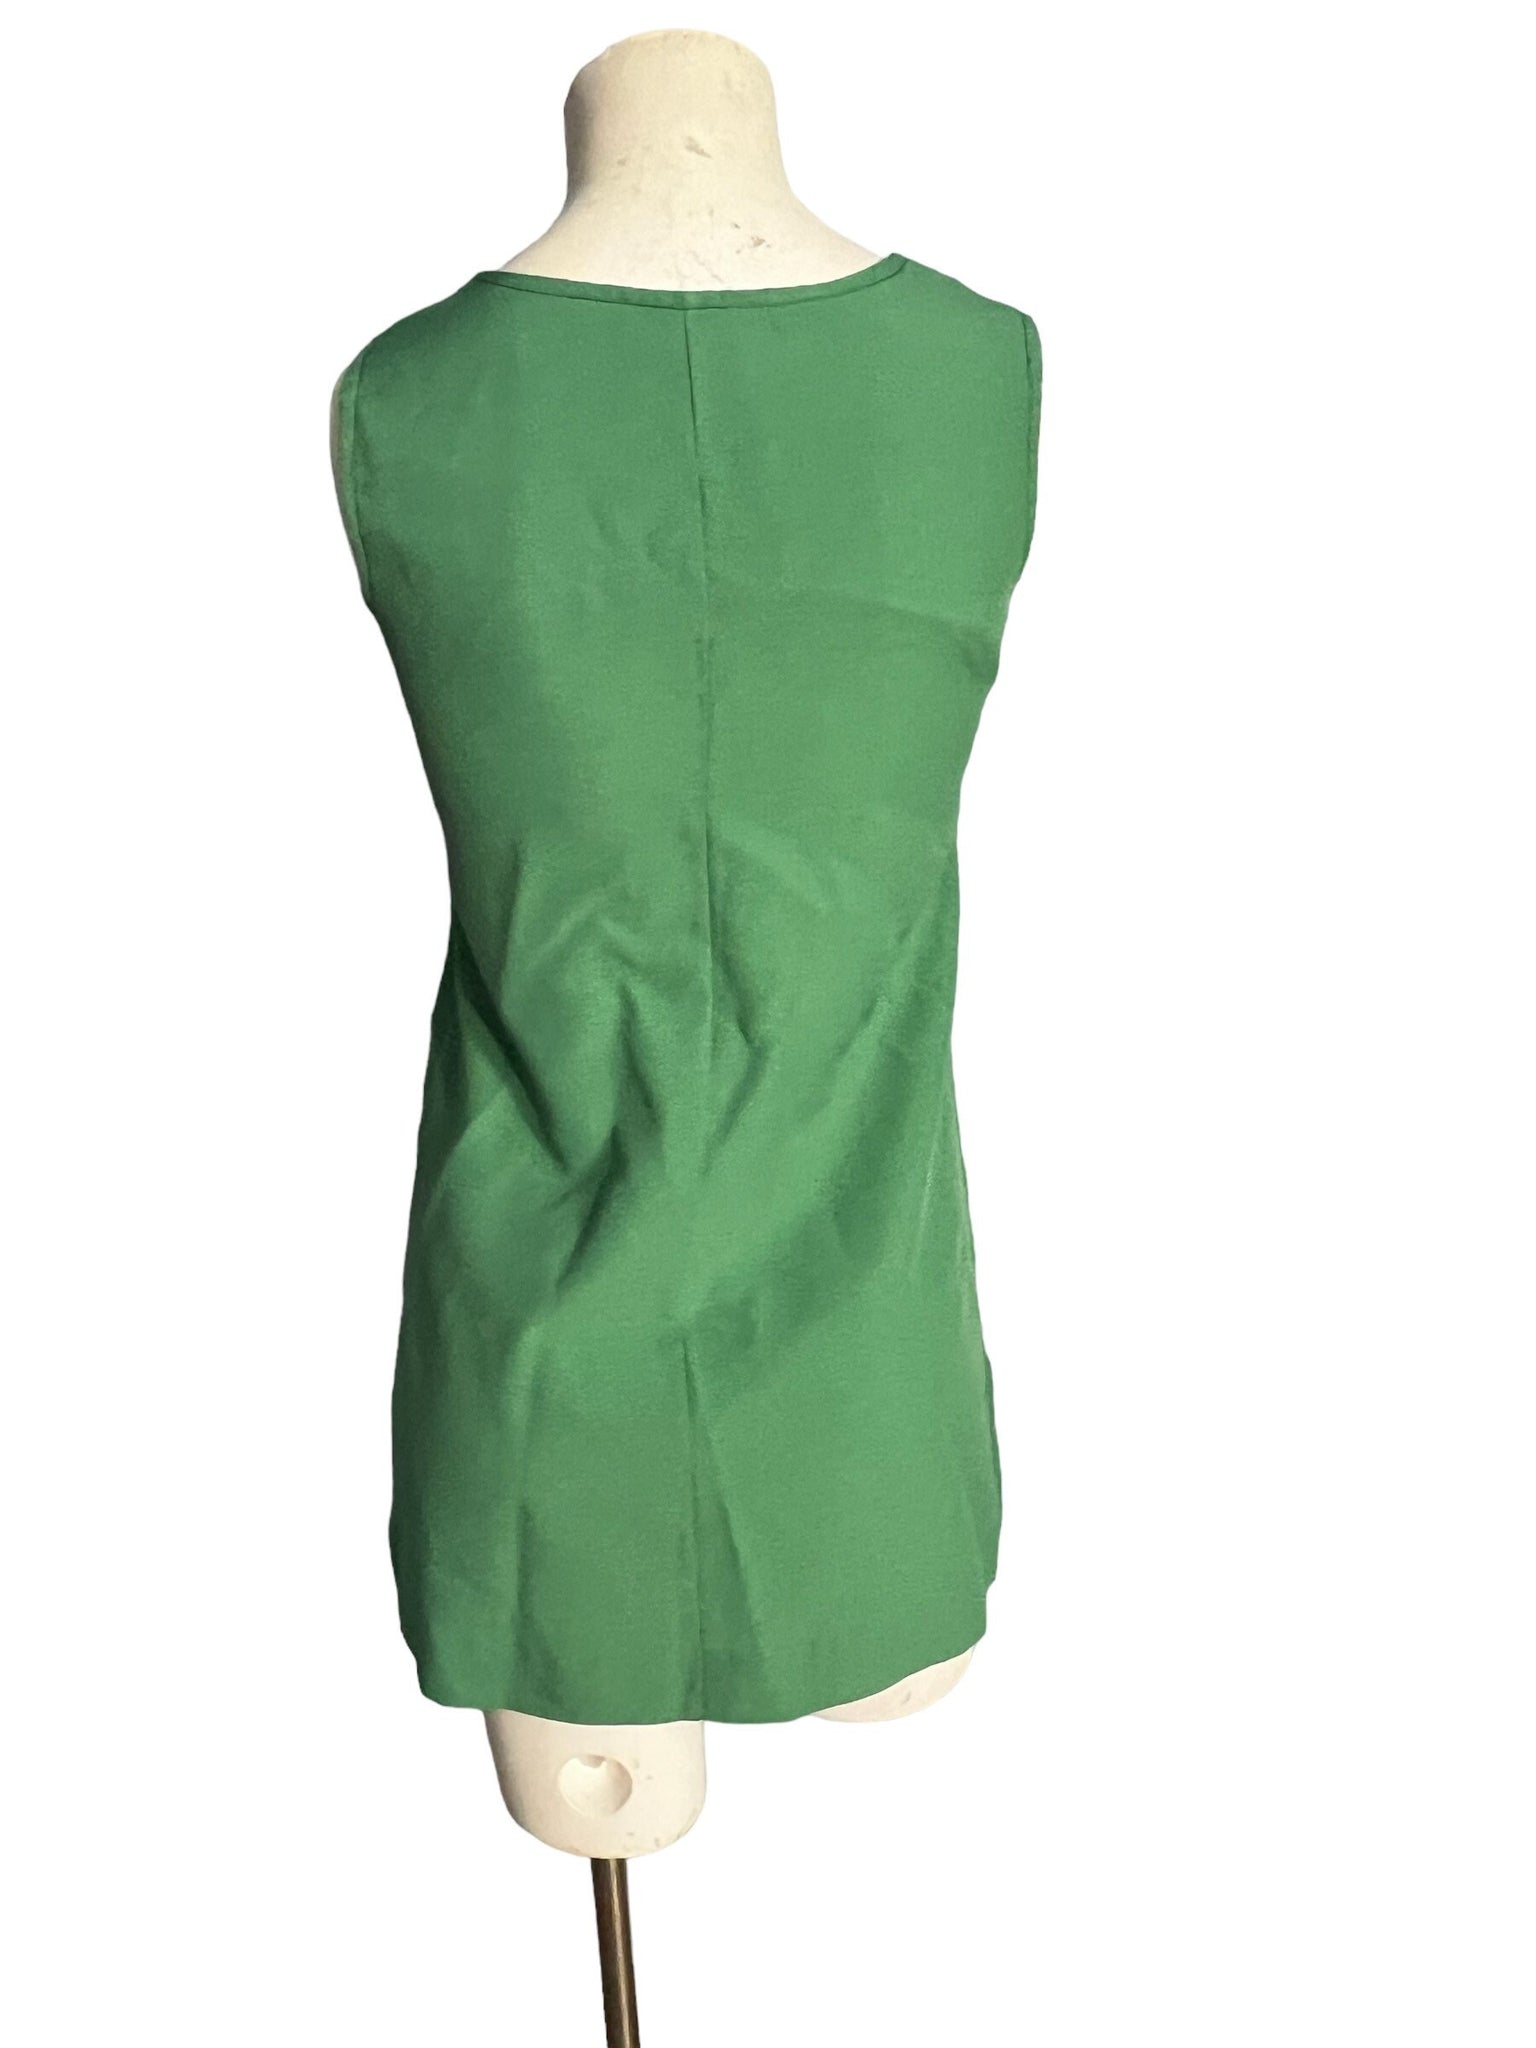 Vintage green girl Scout dress sz 14